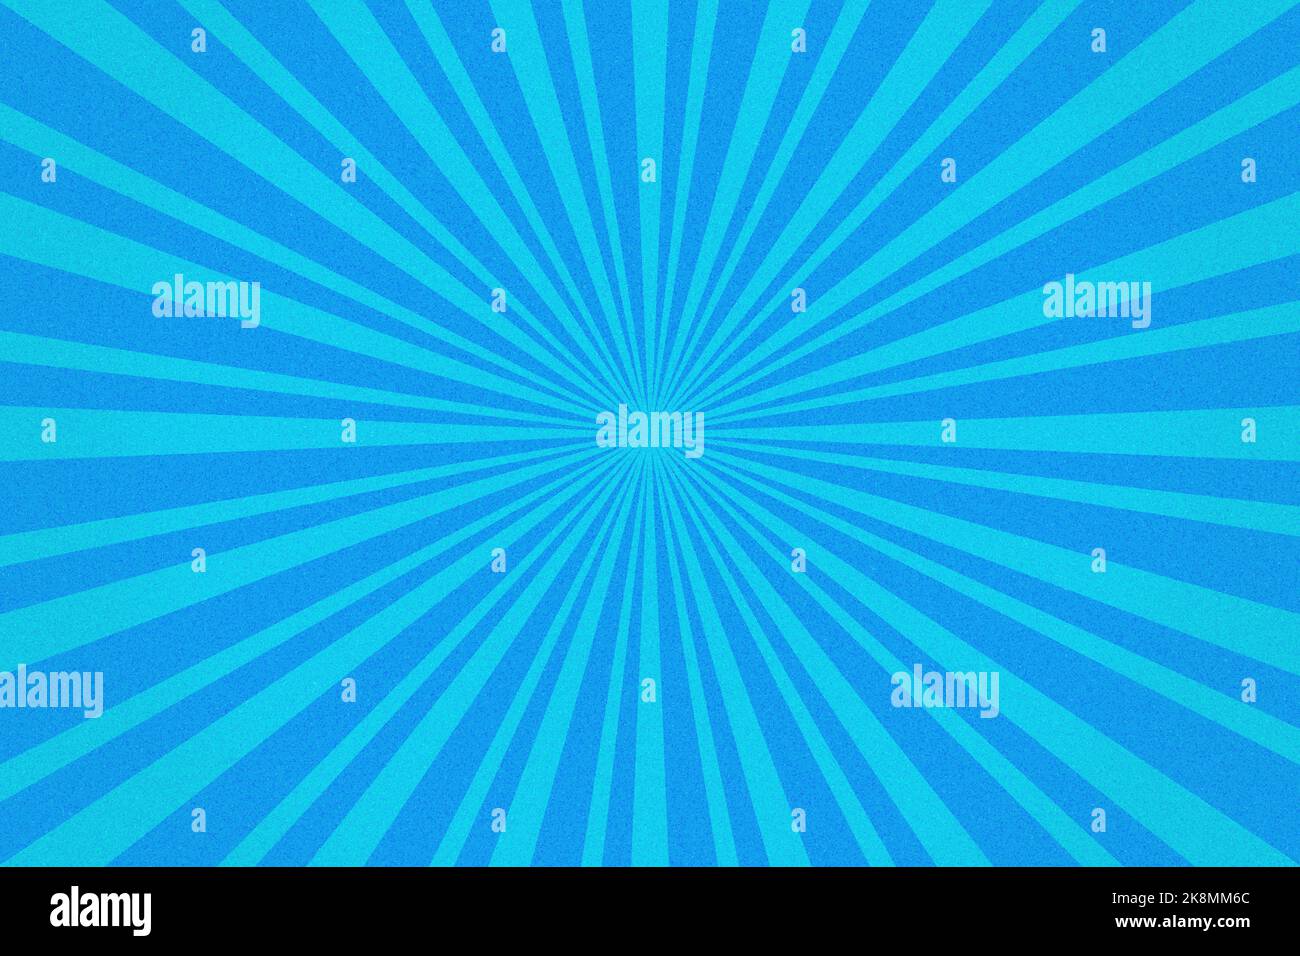 Fond de motif Sunburst bleu granuleux. Illustration géométrique des rayons radiaux vibrants Banque D'Images